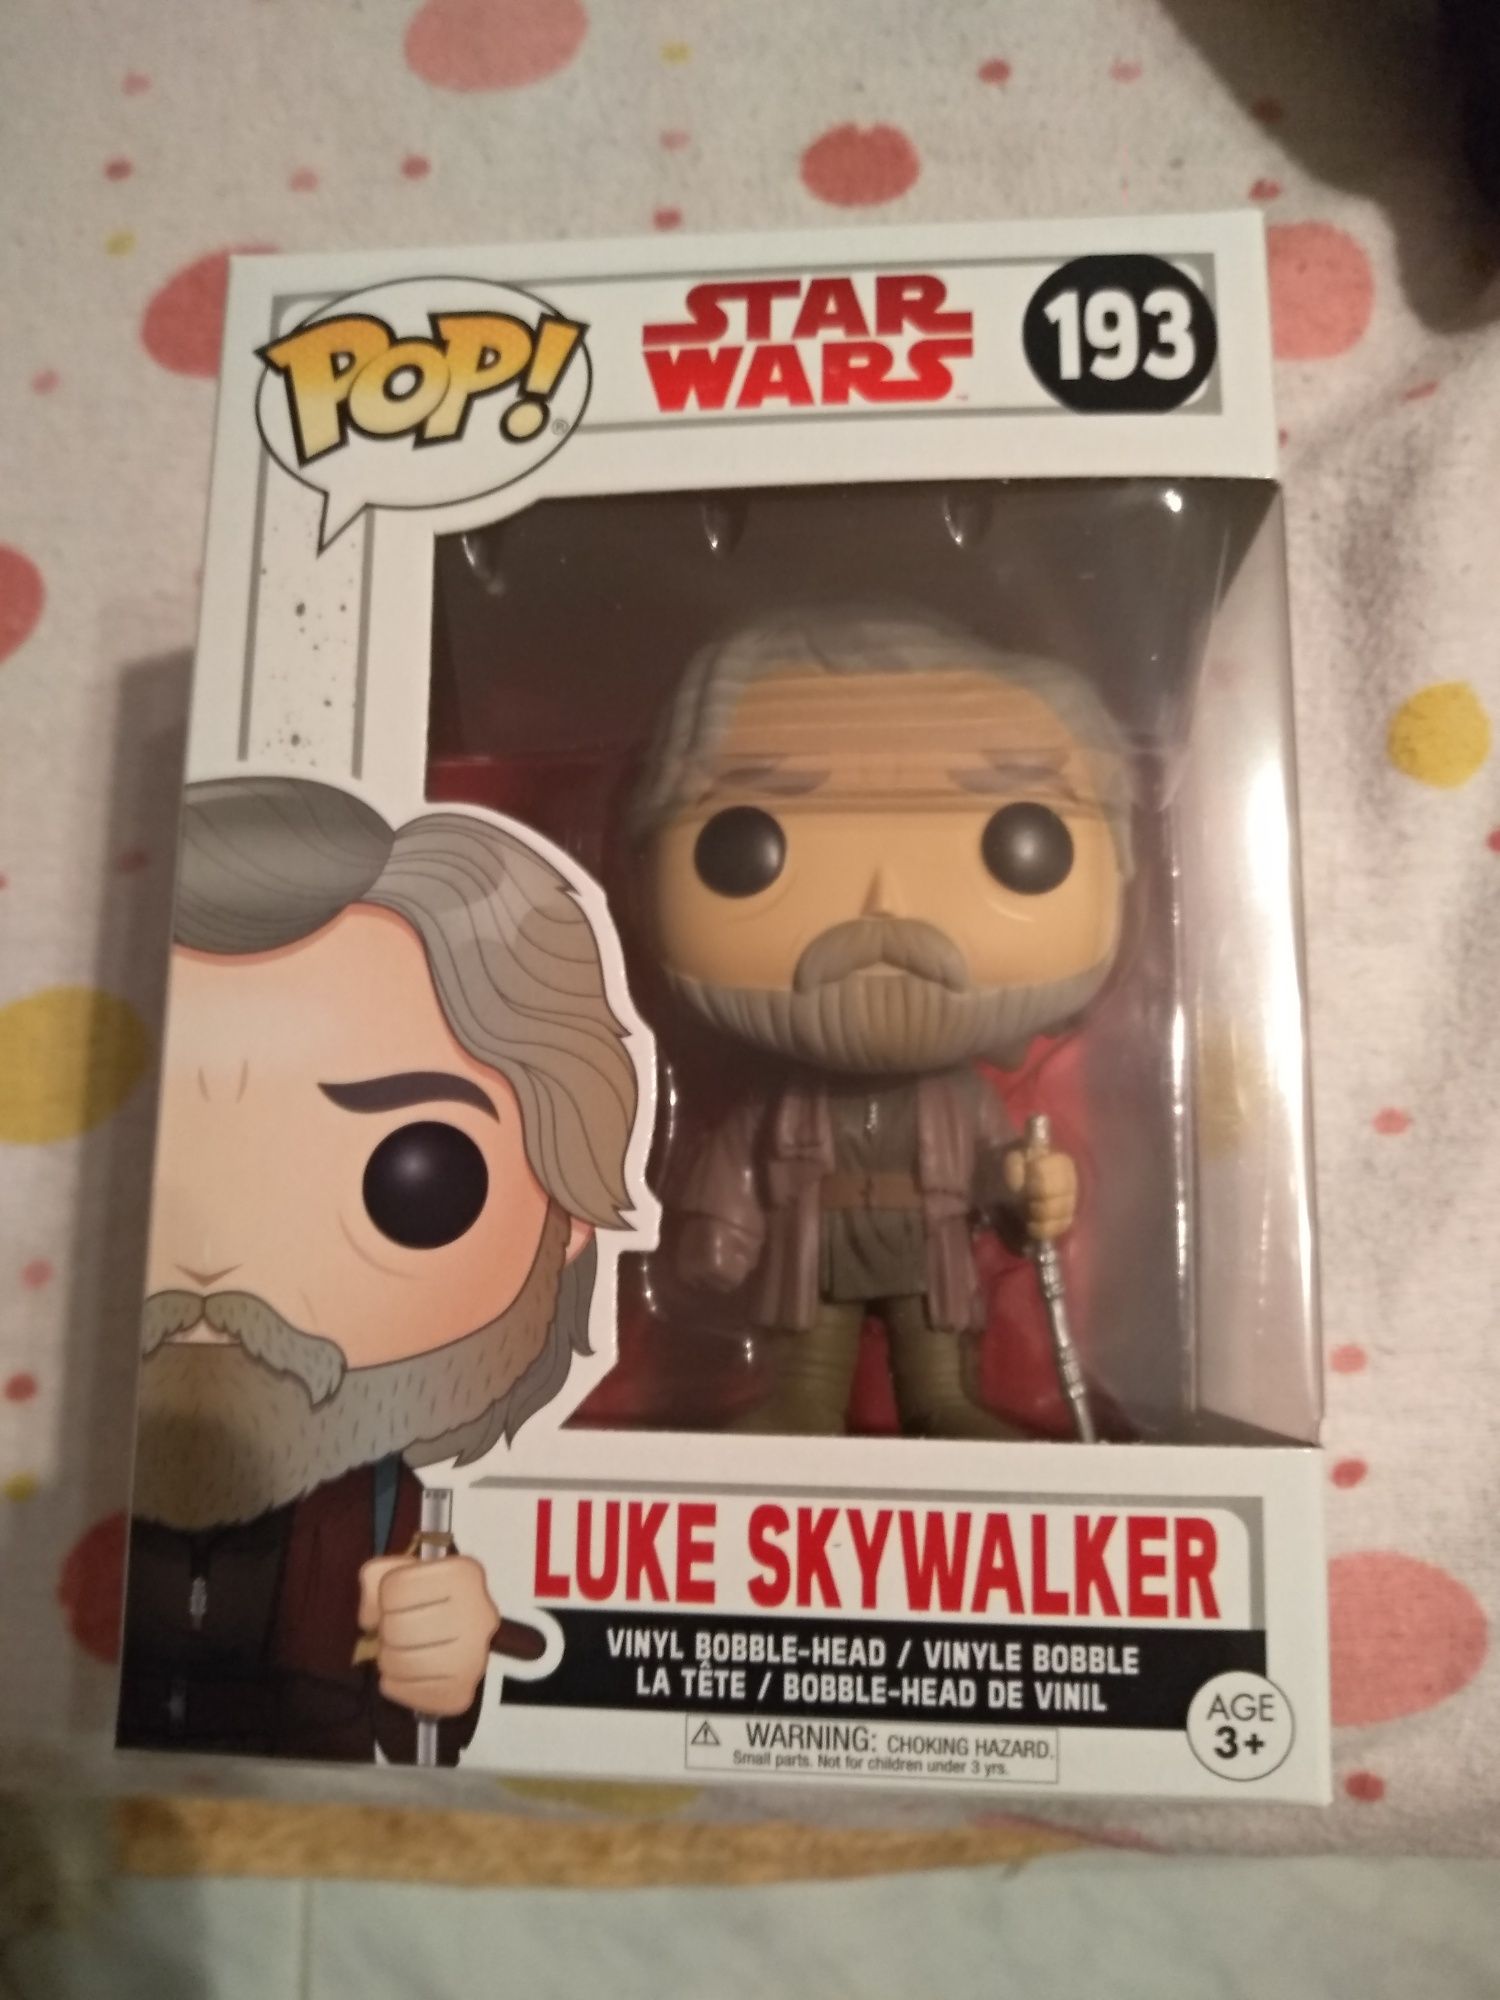 Pop Star wars Luke Skywalker 193